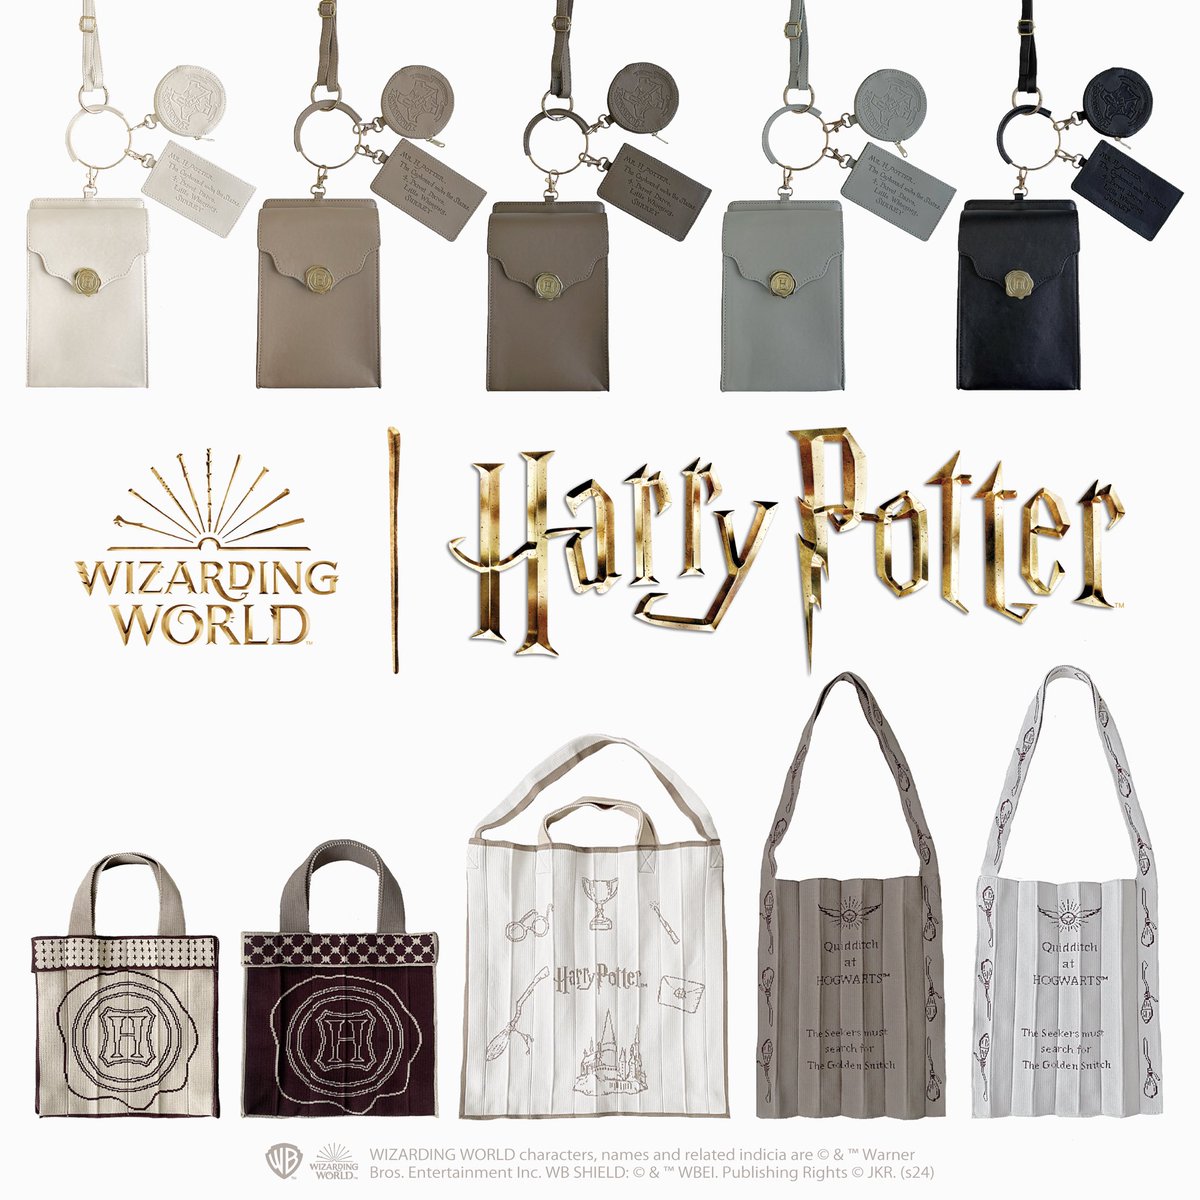 【WEB販売】
Harry Potterコラボ新作コレクションは
明日4月26日(金) 11:00〜
mytwilight楽天市場店で発売開始いたします🧙‍♀️✨

発売時間になったら下記リンクから購入が可能になります🤍　
item.rakuten.co.jp/poneycombtokyo…

ぜひGETしてください👓

#HarryPotter #ハリーポッター #ハリポタ #魔法ワールド